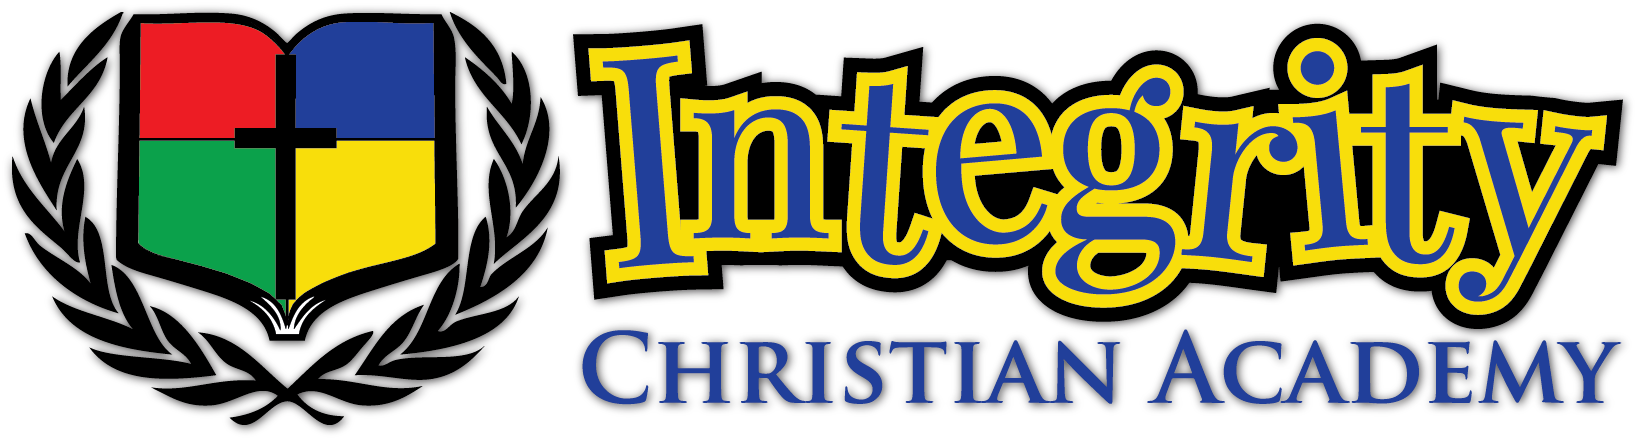 Integrity Christian Academy